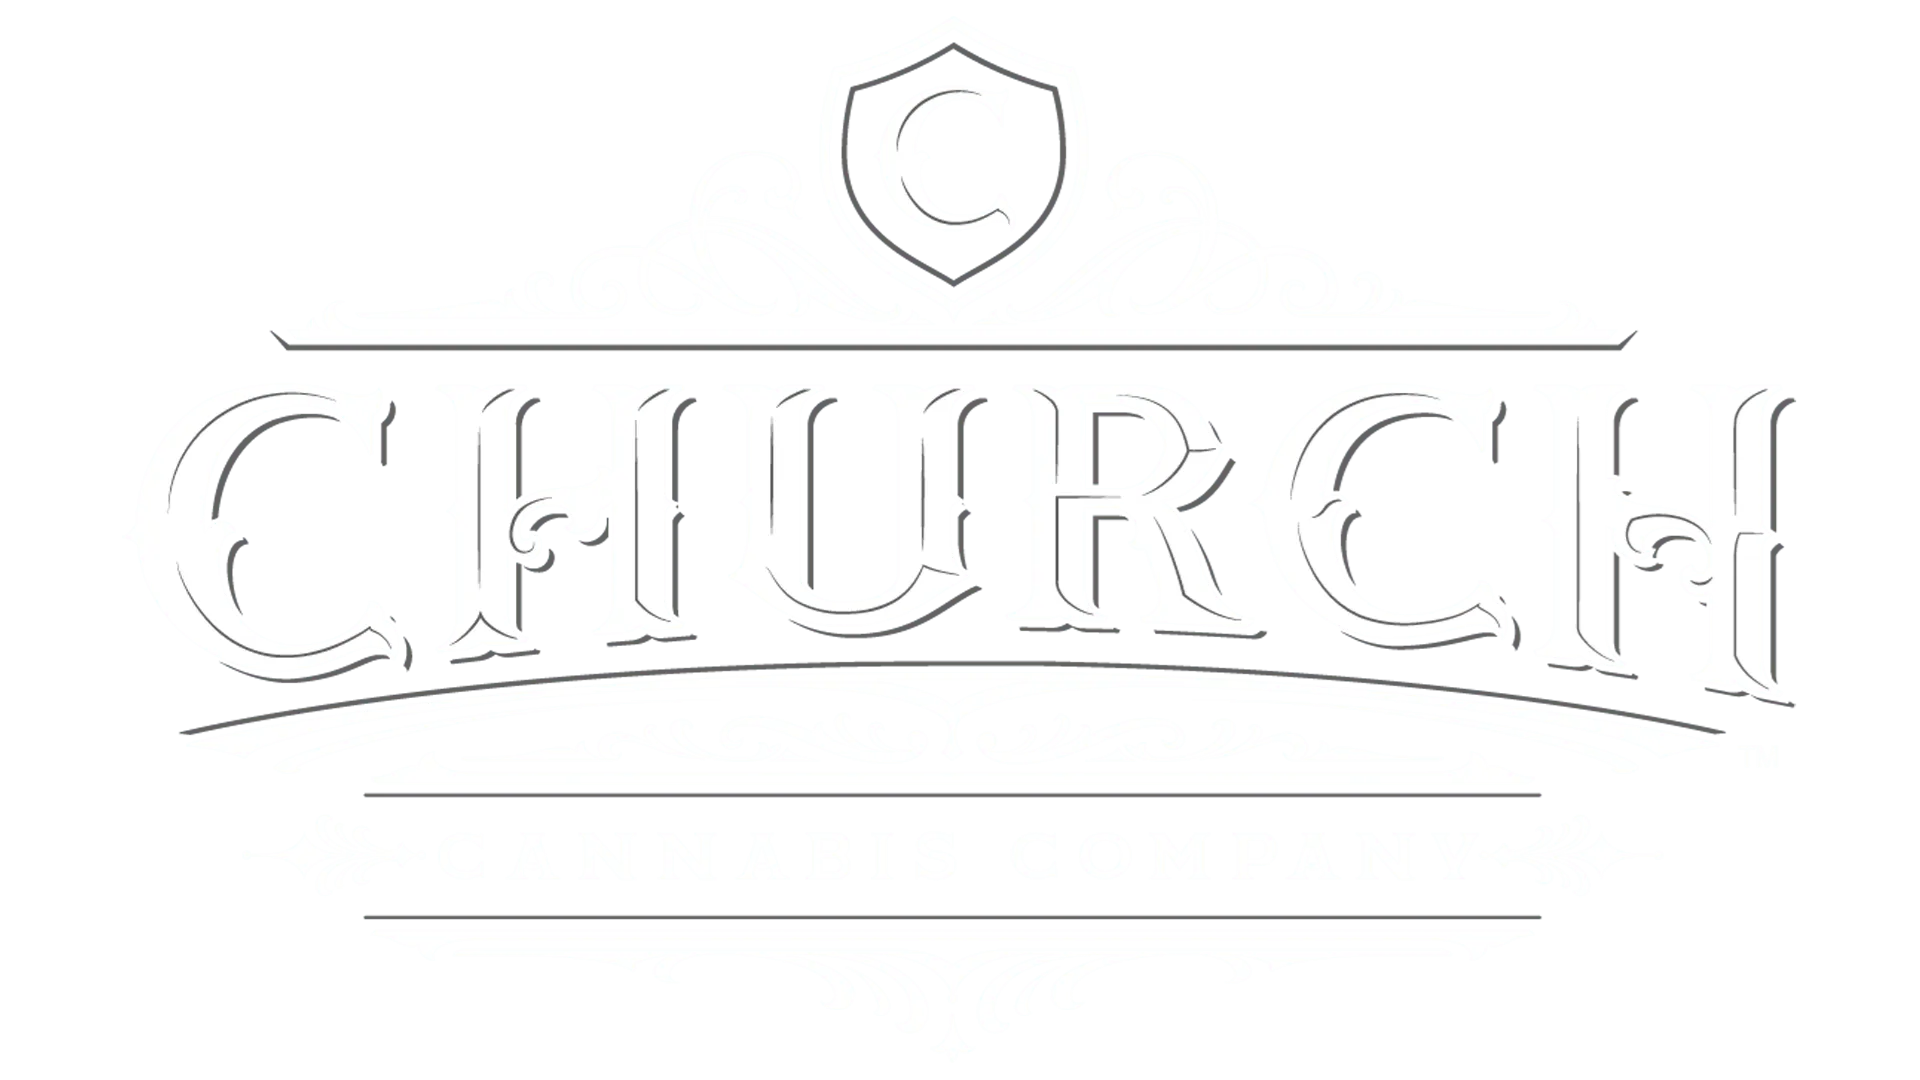 Church Cannabis Co. Cannabis Brand Logo